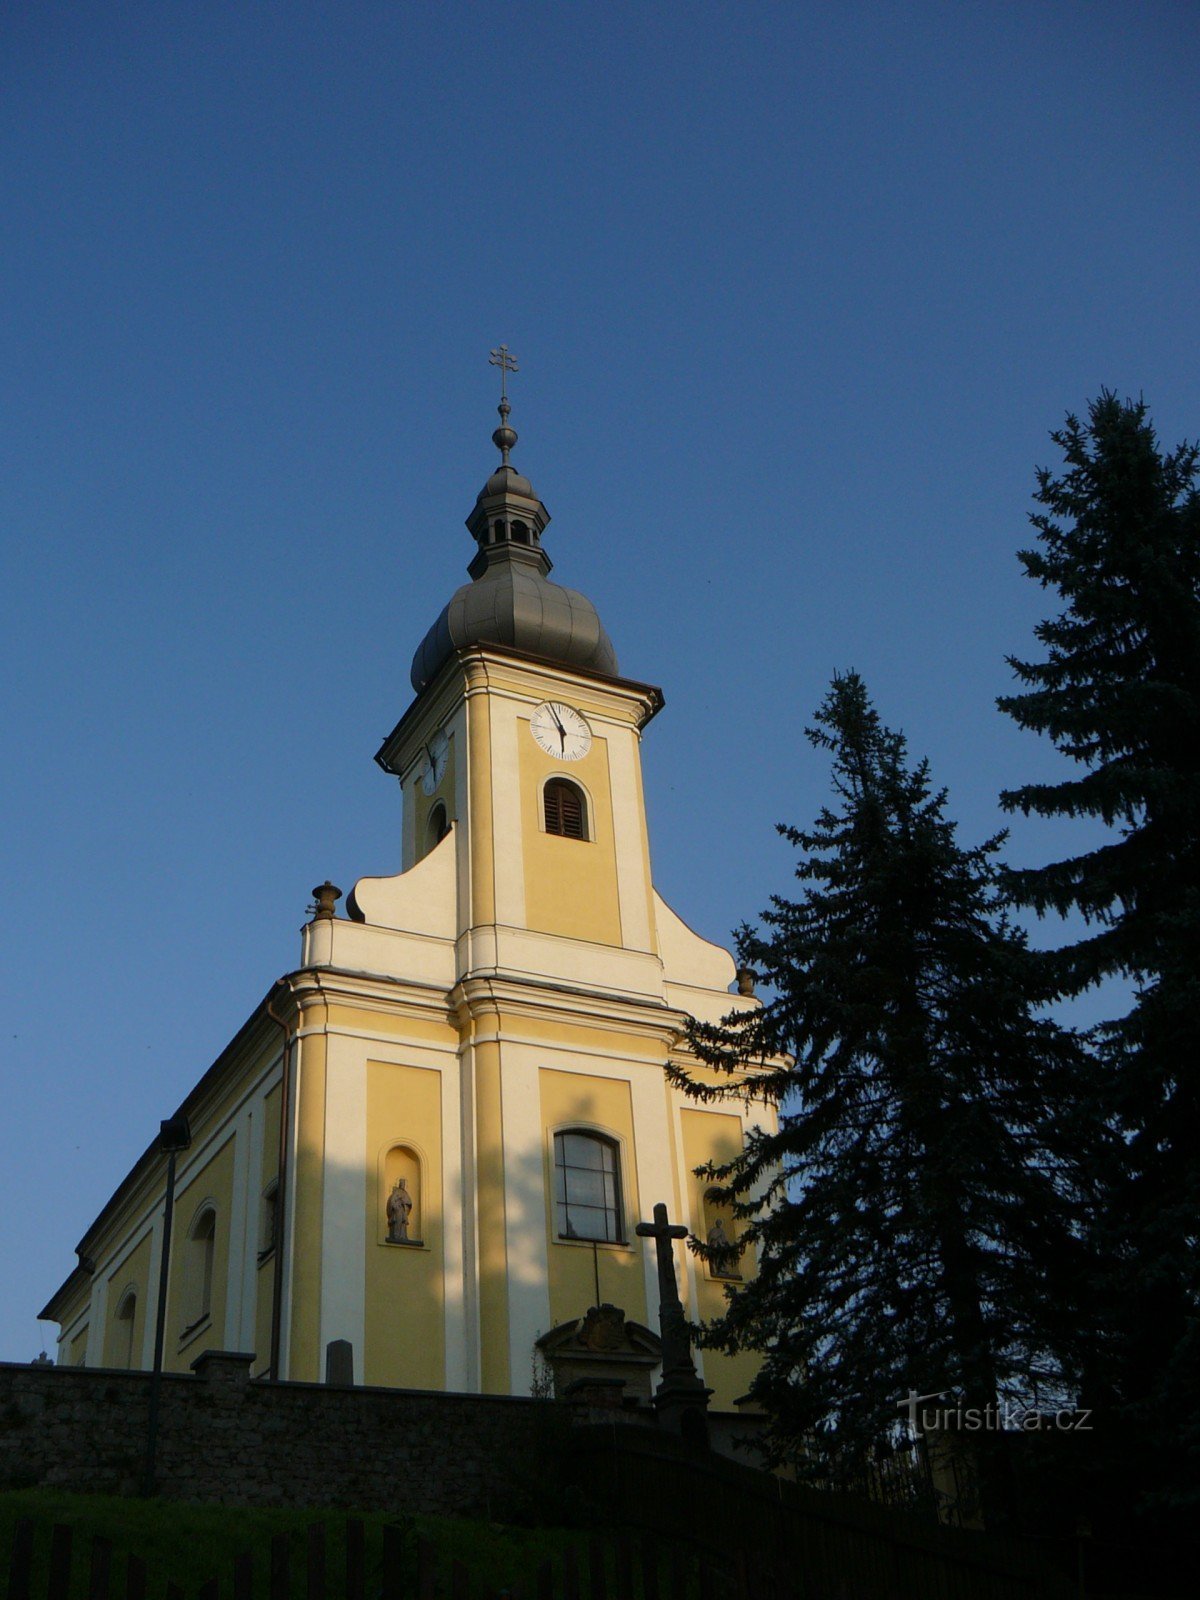 Nhà thờ Rychaltice của Thánh Nicholas